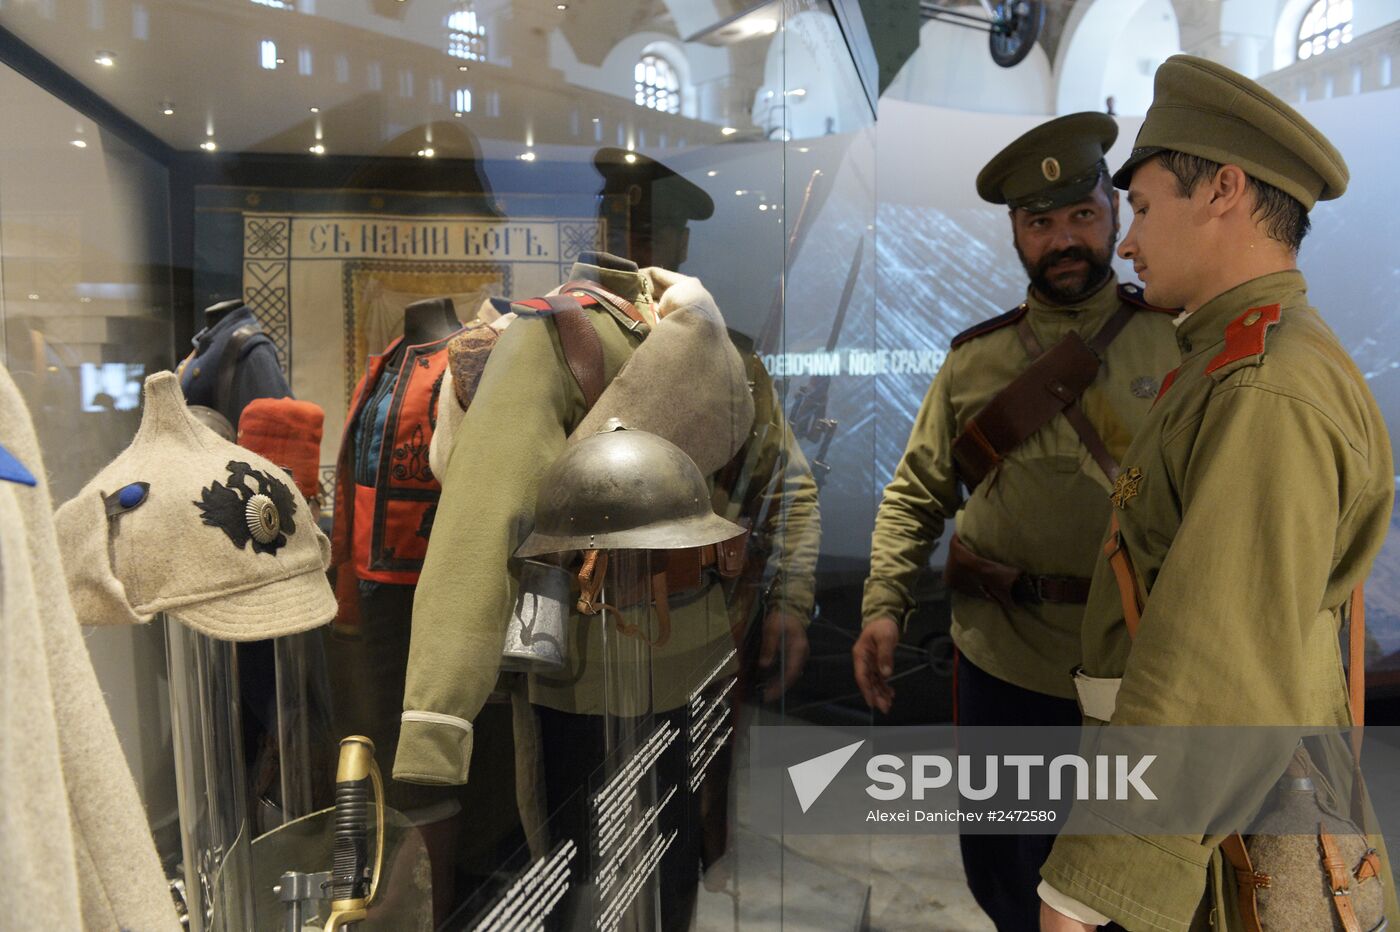 Russia in the Great War Museum opens in Tsarskoye Selo